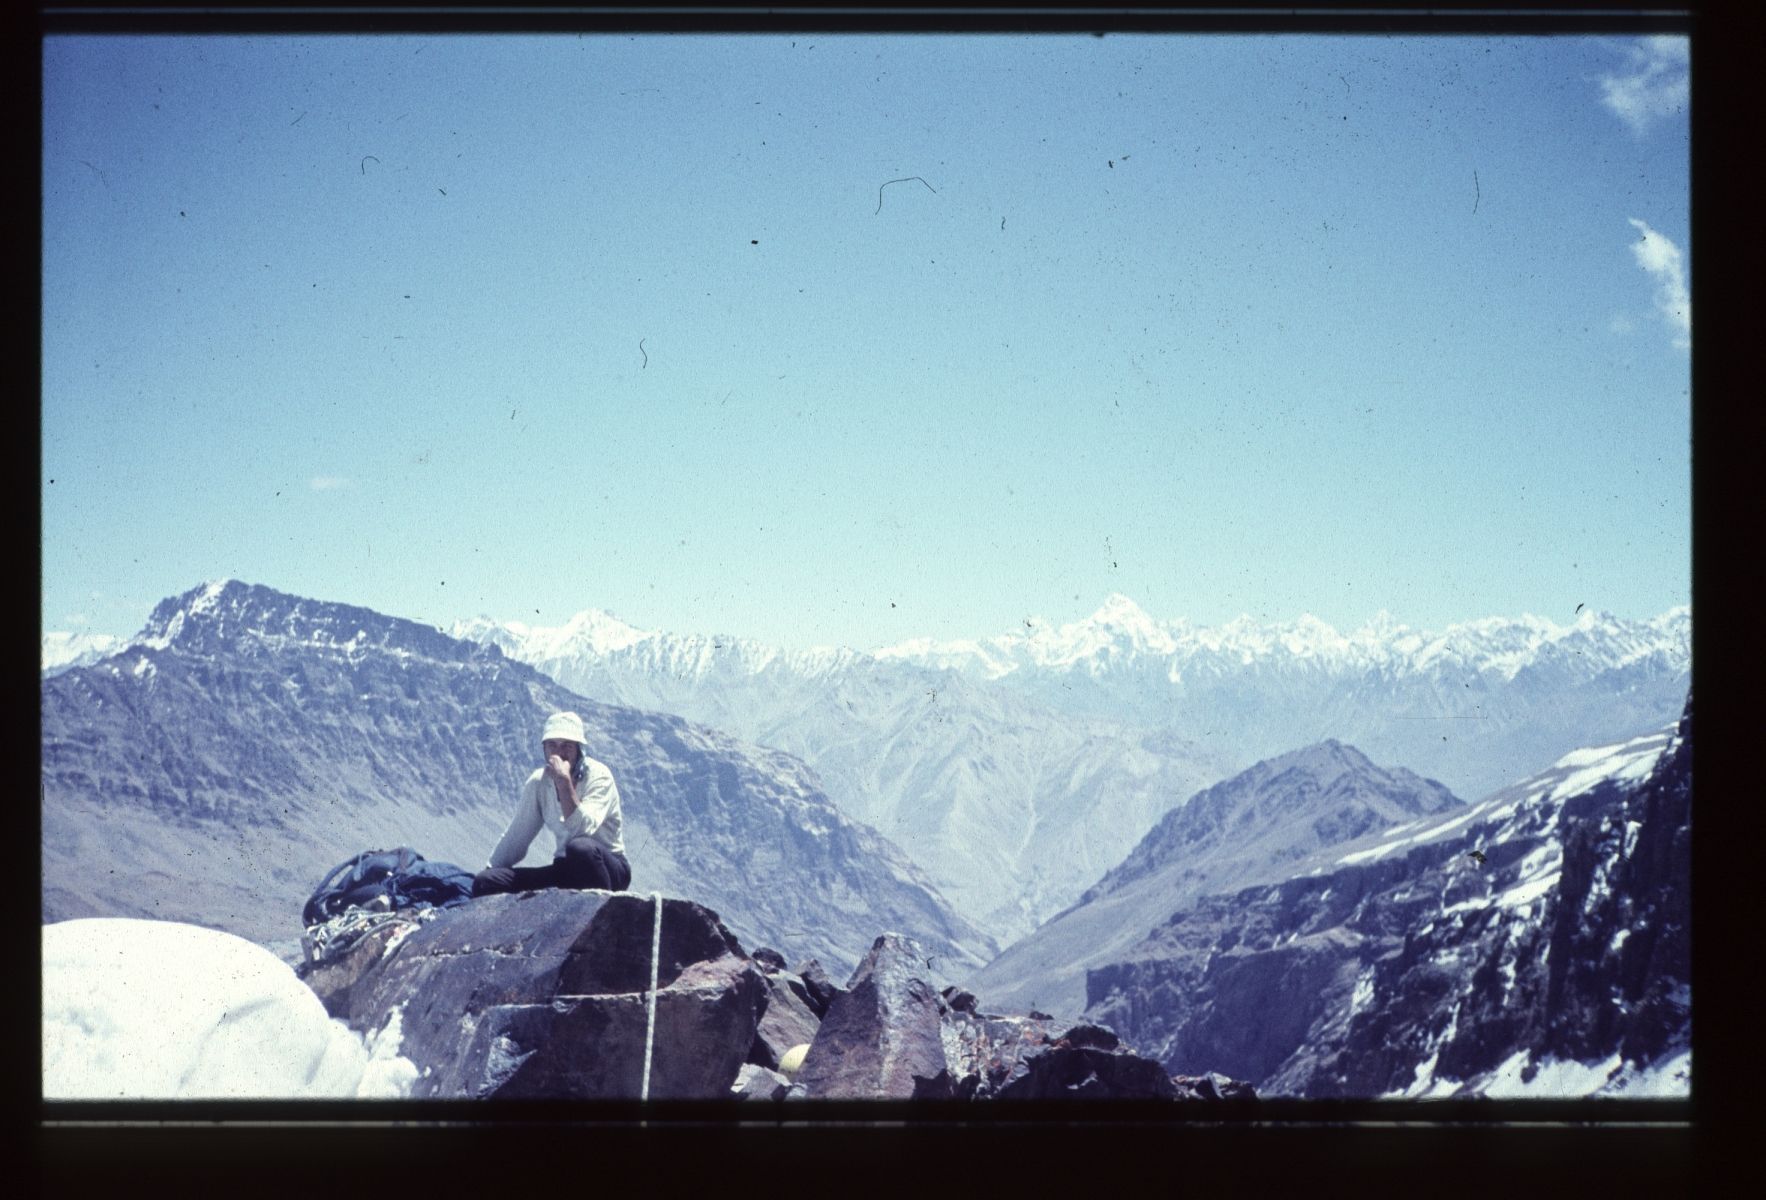 Koruna Himálaje Radka Jaroše: K2 (8611 metrů)